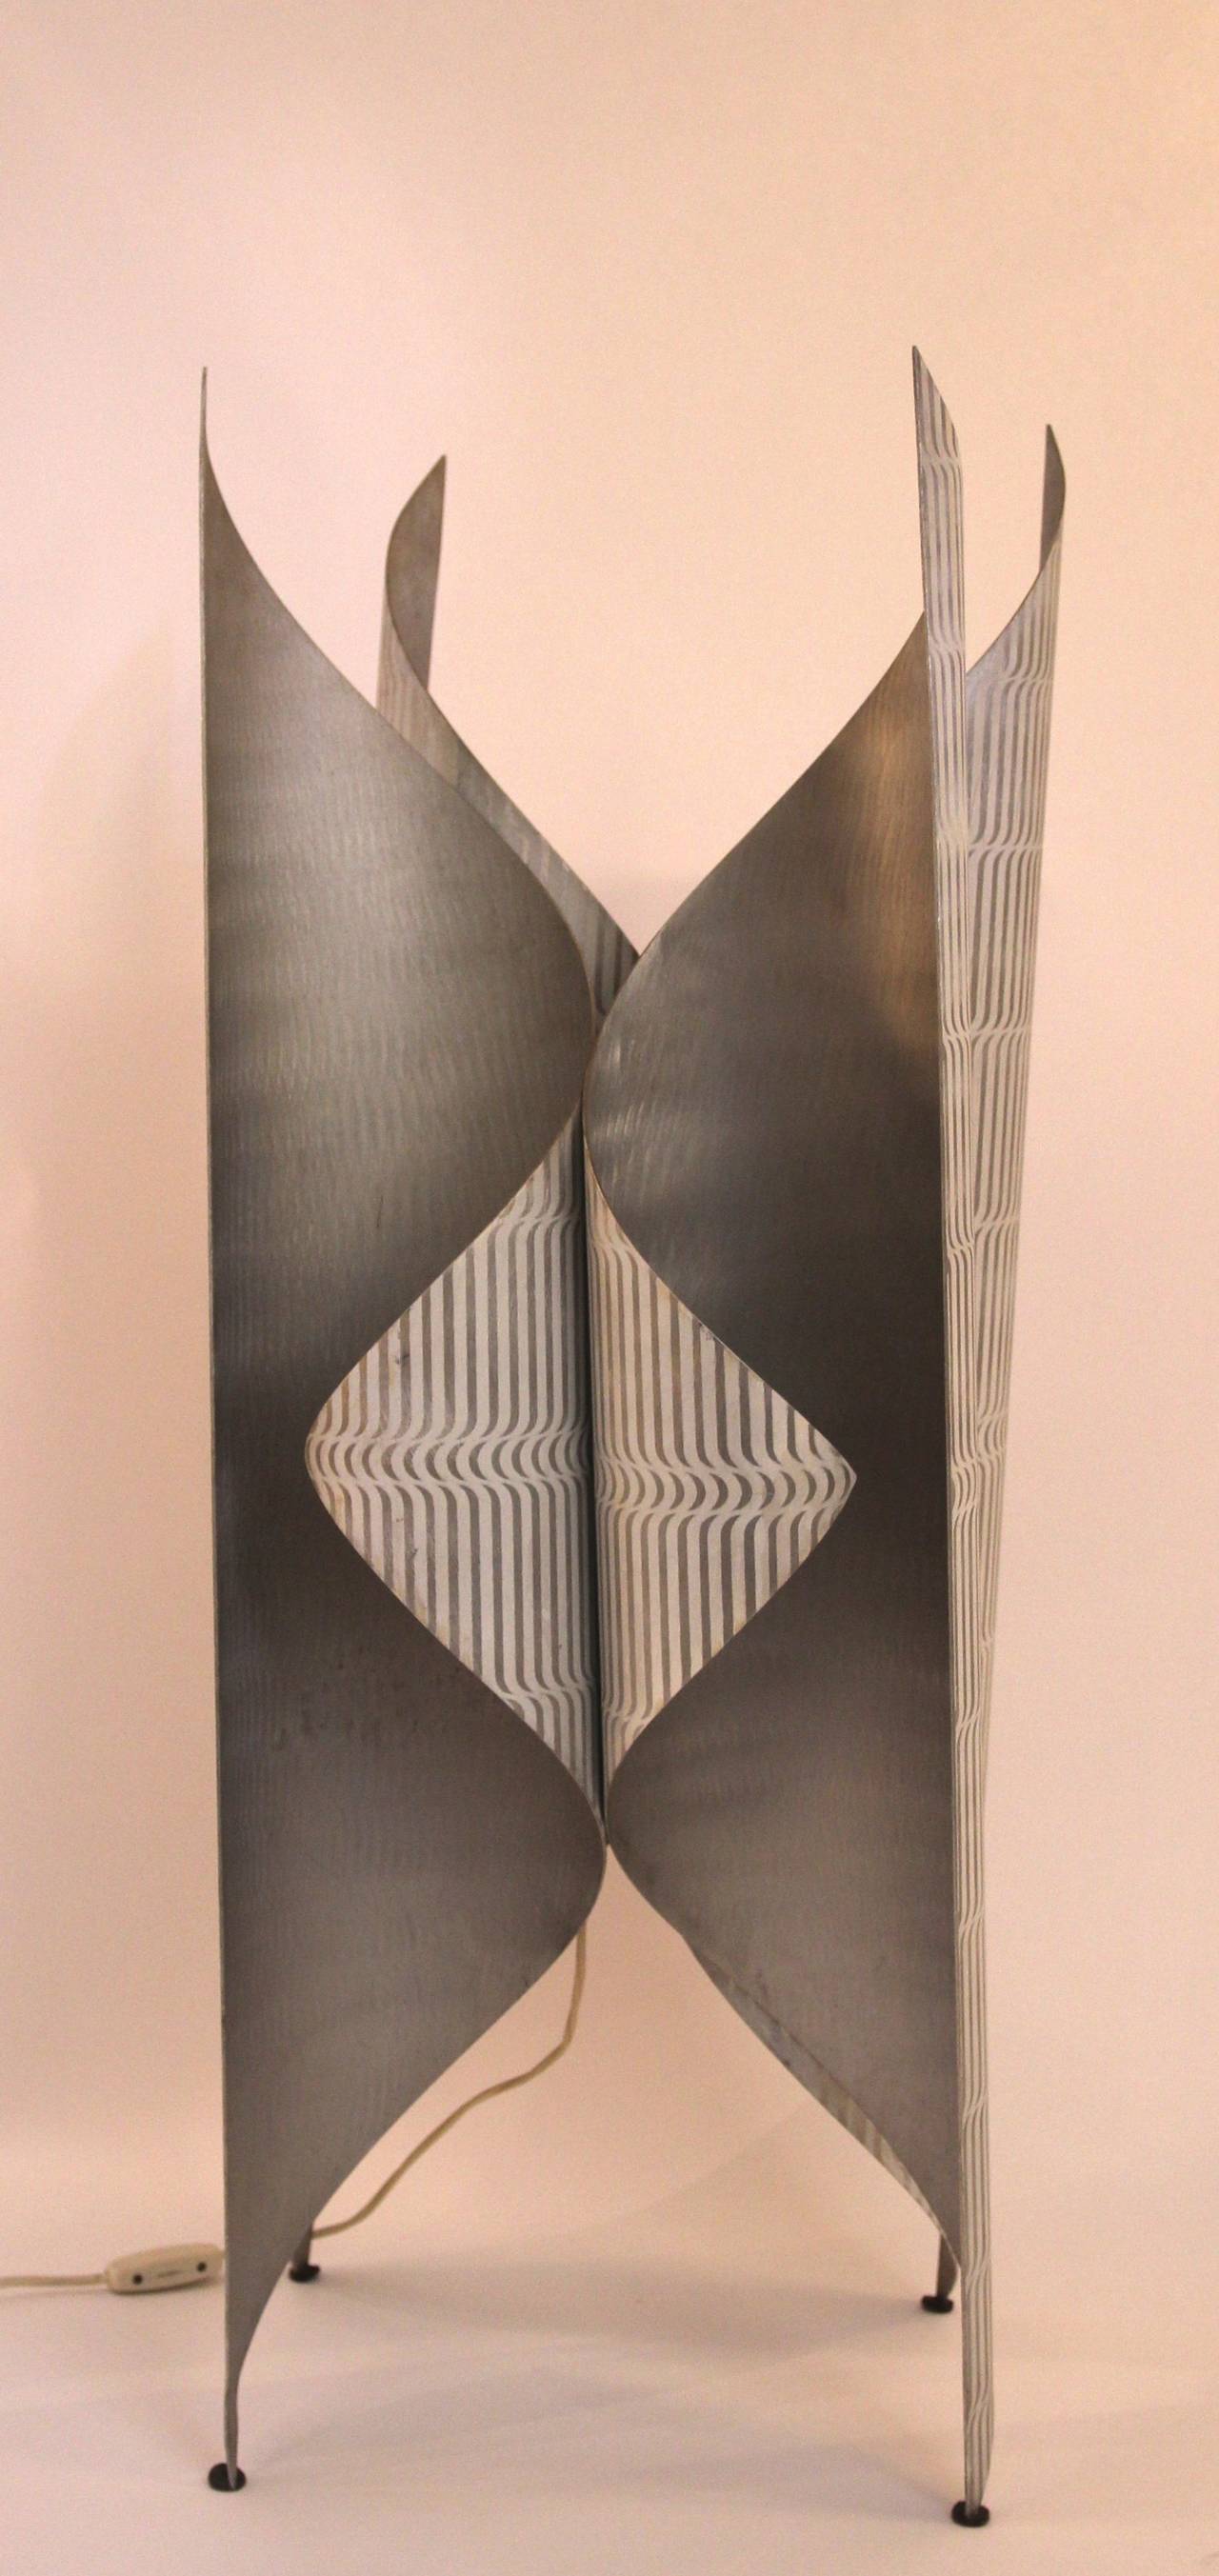 Lorenzo Burchiellaro,
floor lamp curved and lacquered aluminum.
Production workshop Burchiellaro, circa 1970, Italy.
Height: 99 cm, diameter: 36 cm.